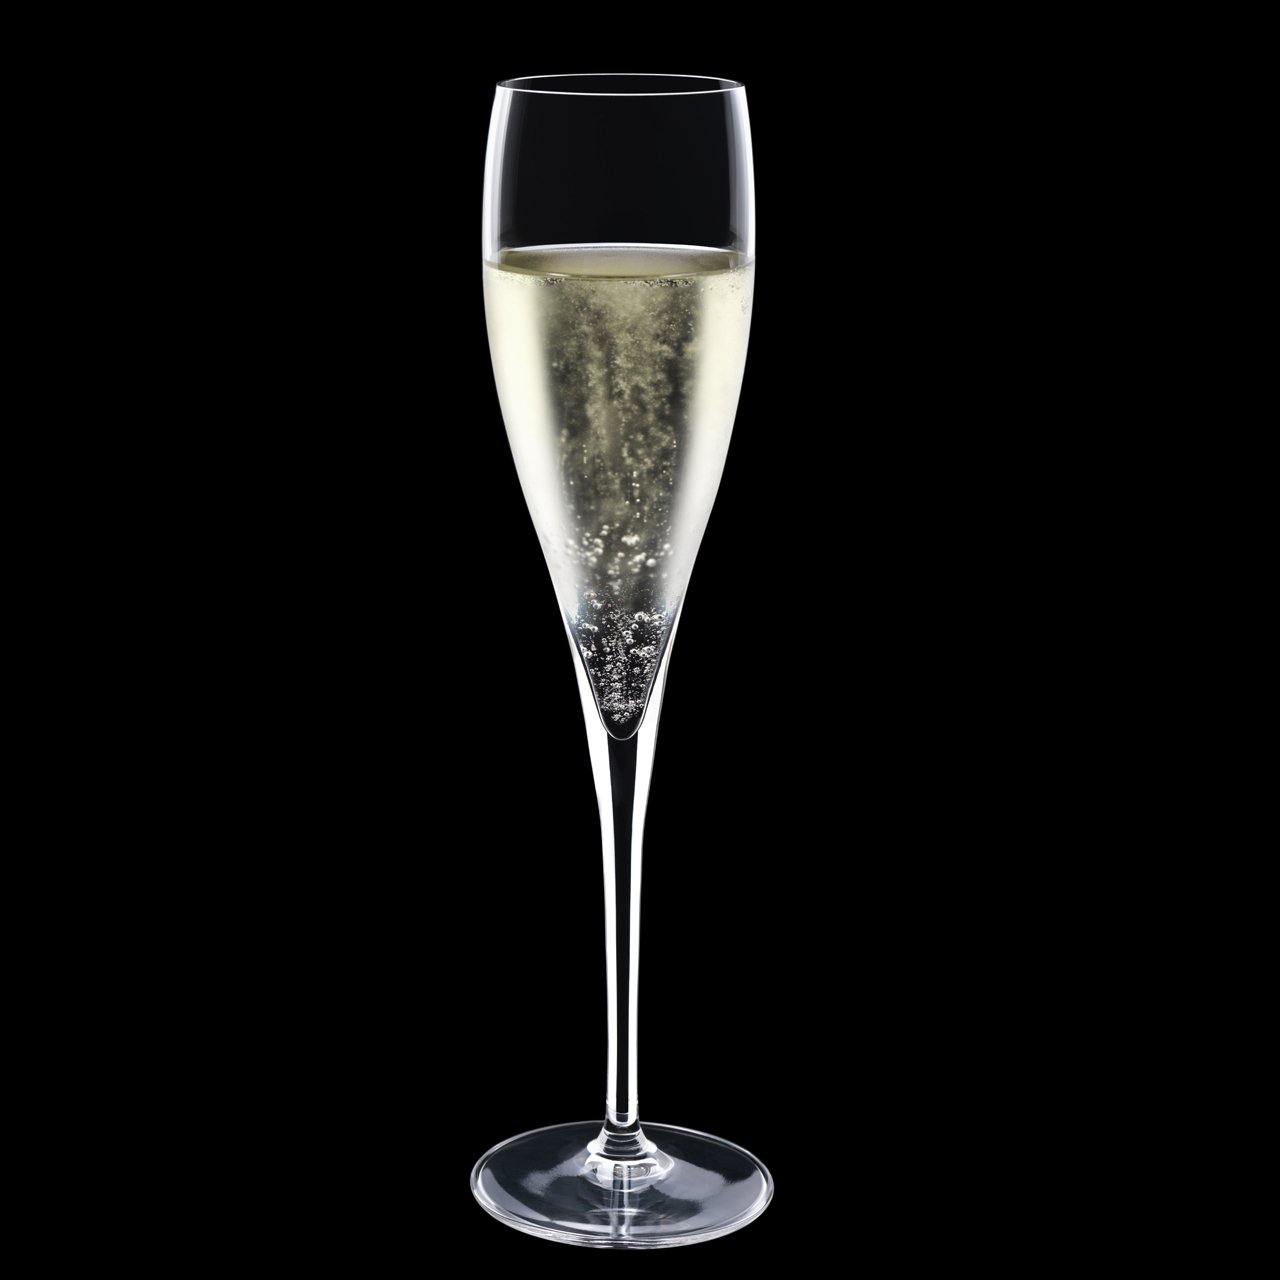 Sekt Glas Perlage Schaumwein der Serie Vinoteque, 175 ml, mit Sekt gefüllt, dunkler Hintergrund